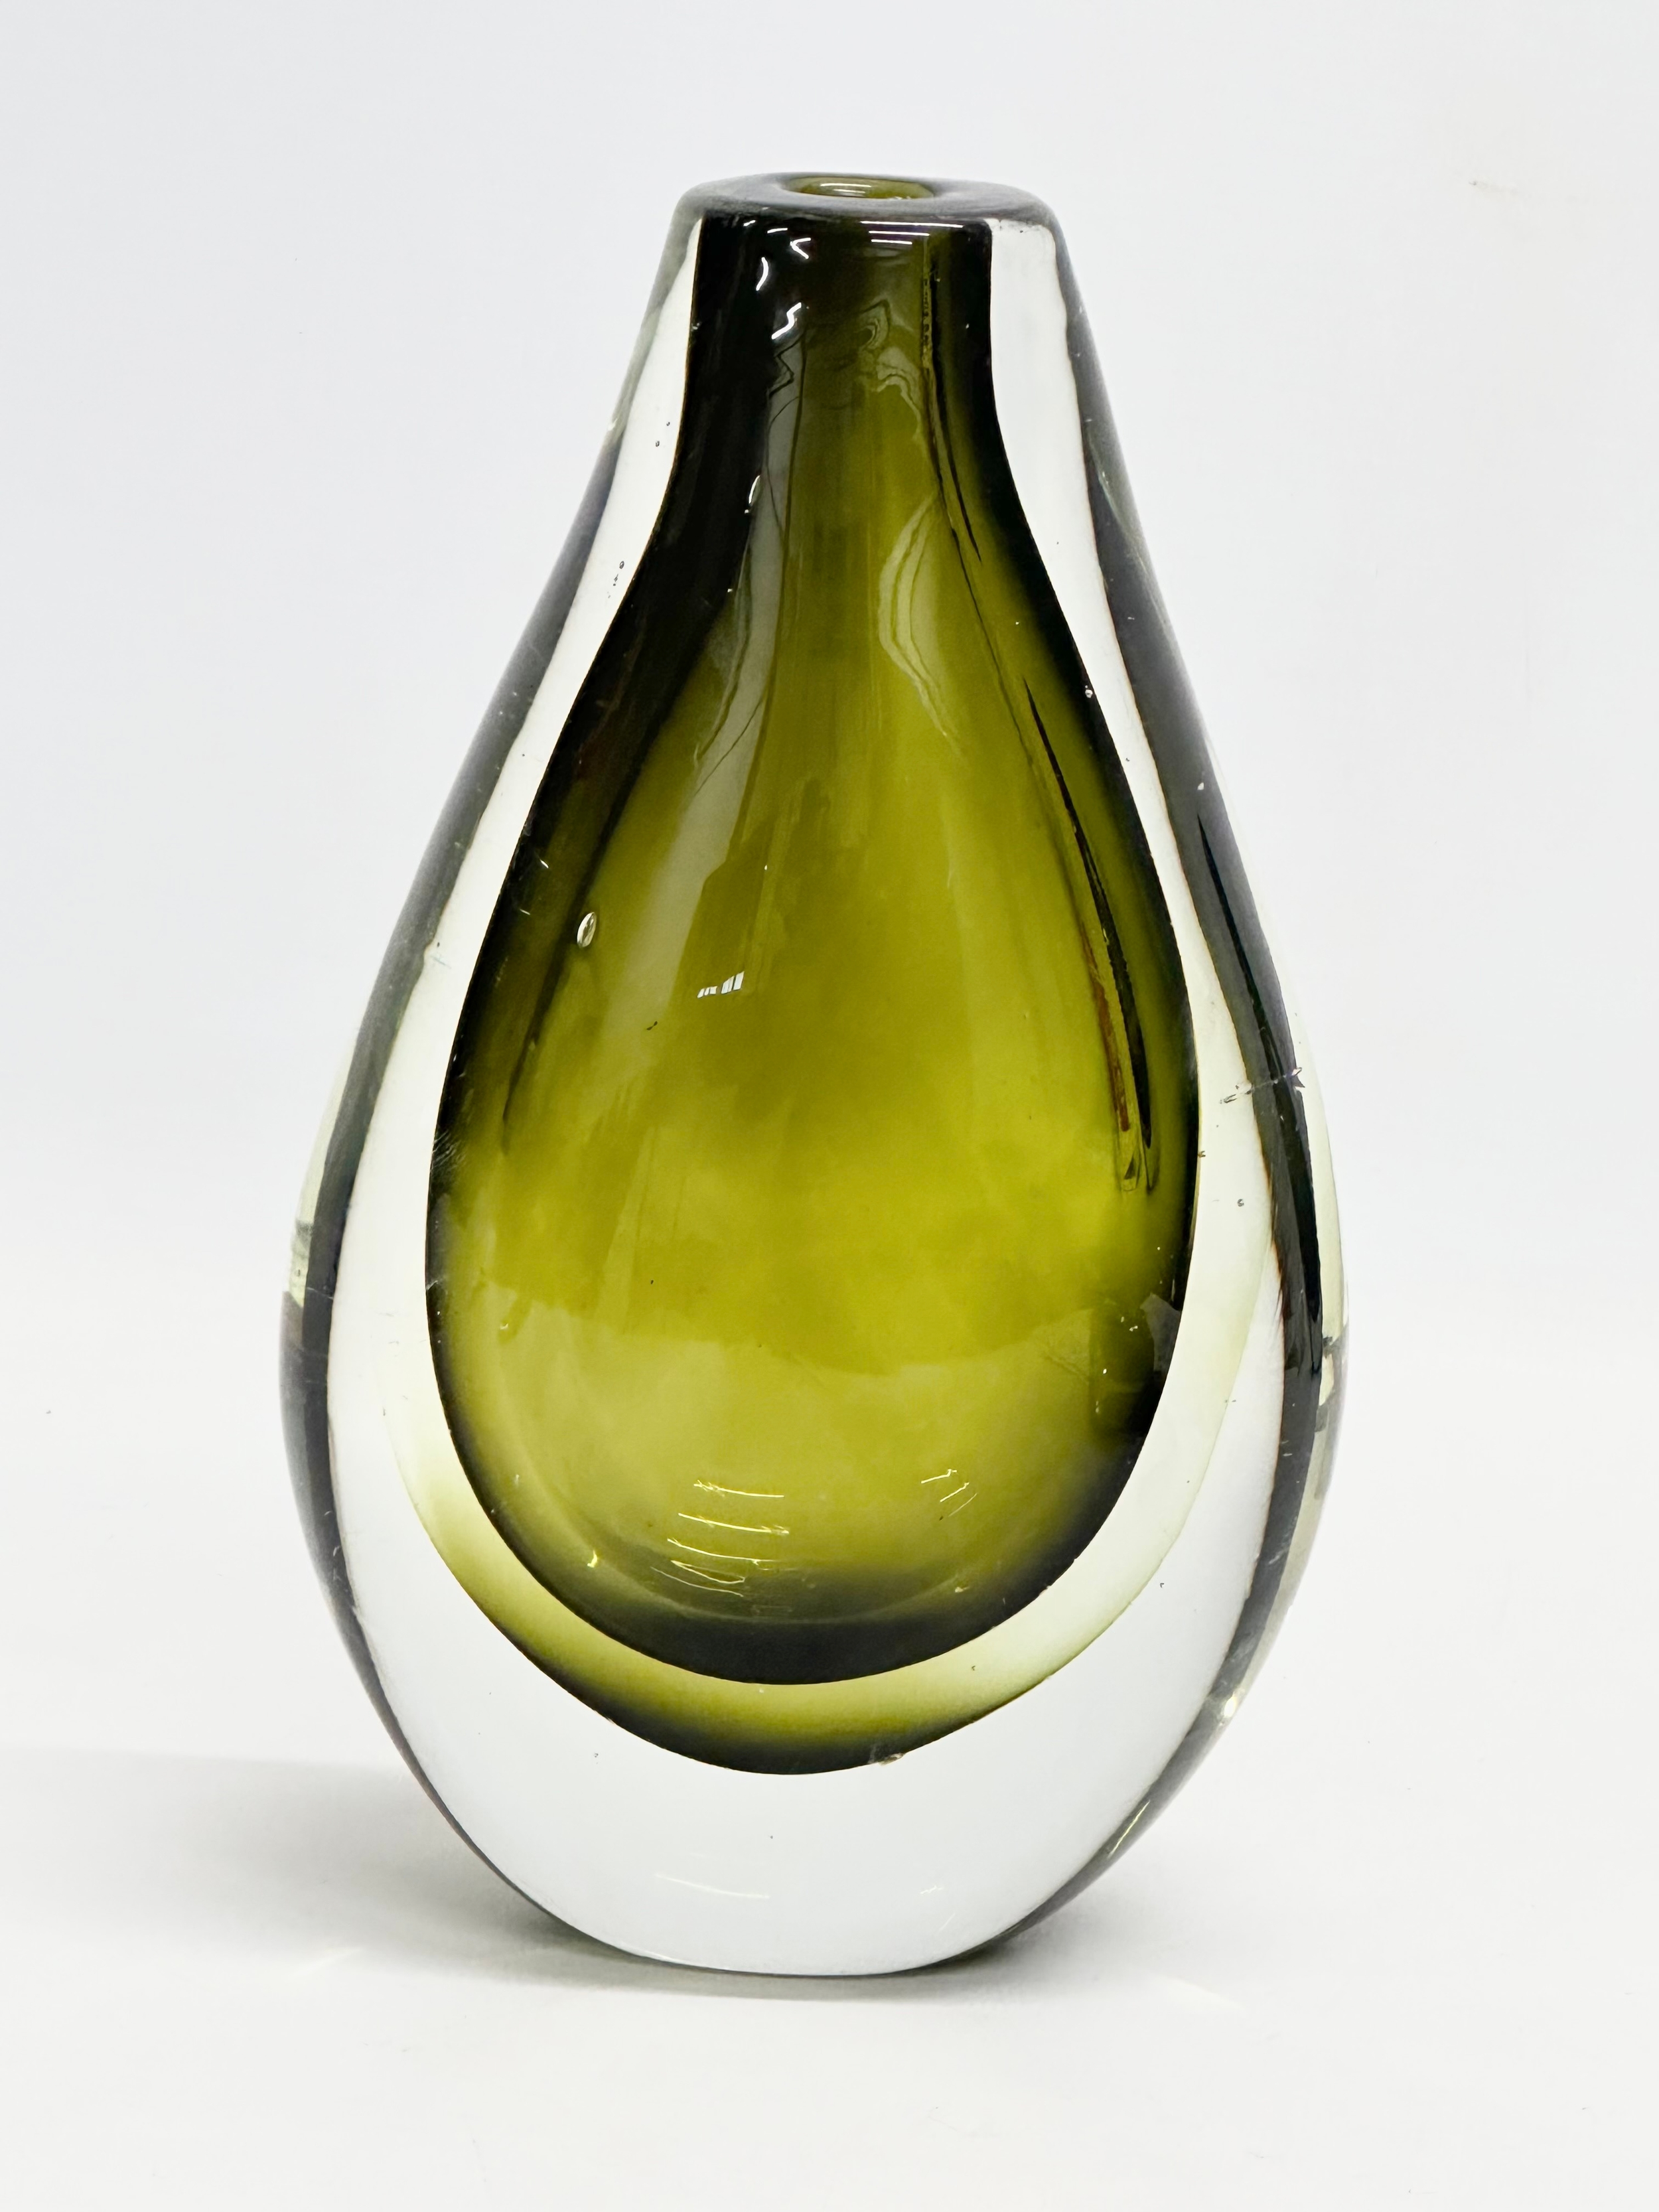 A Murano Sommerso Glass vase designed by Flavio Poli for Seguso Vetri d'Arte. 12x21cm